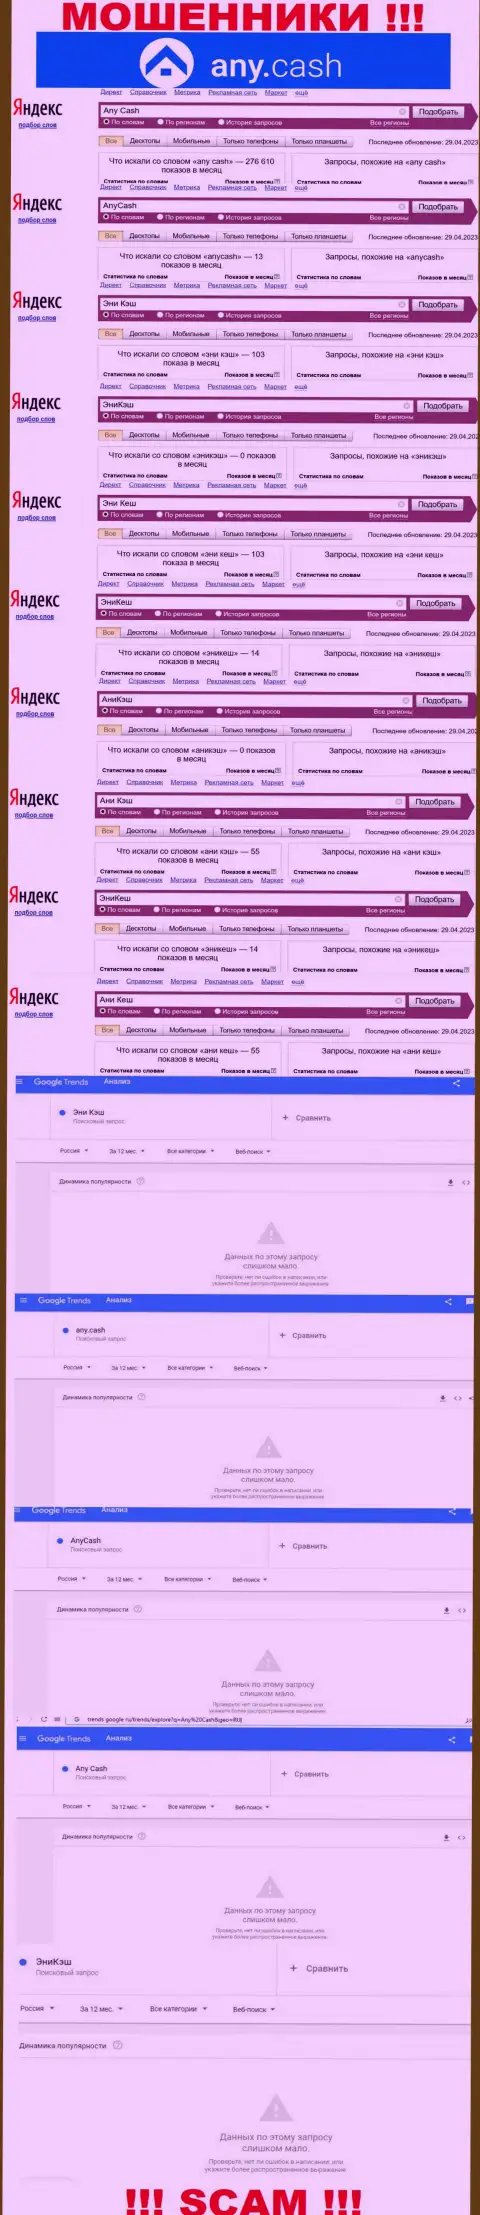 Скриншот статистических сведений поисковых запросов по незаконно действующей конторе Эни Кеш